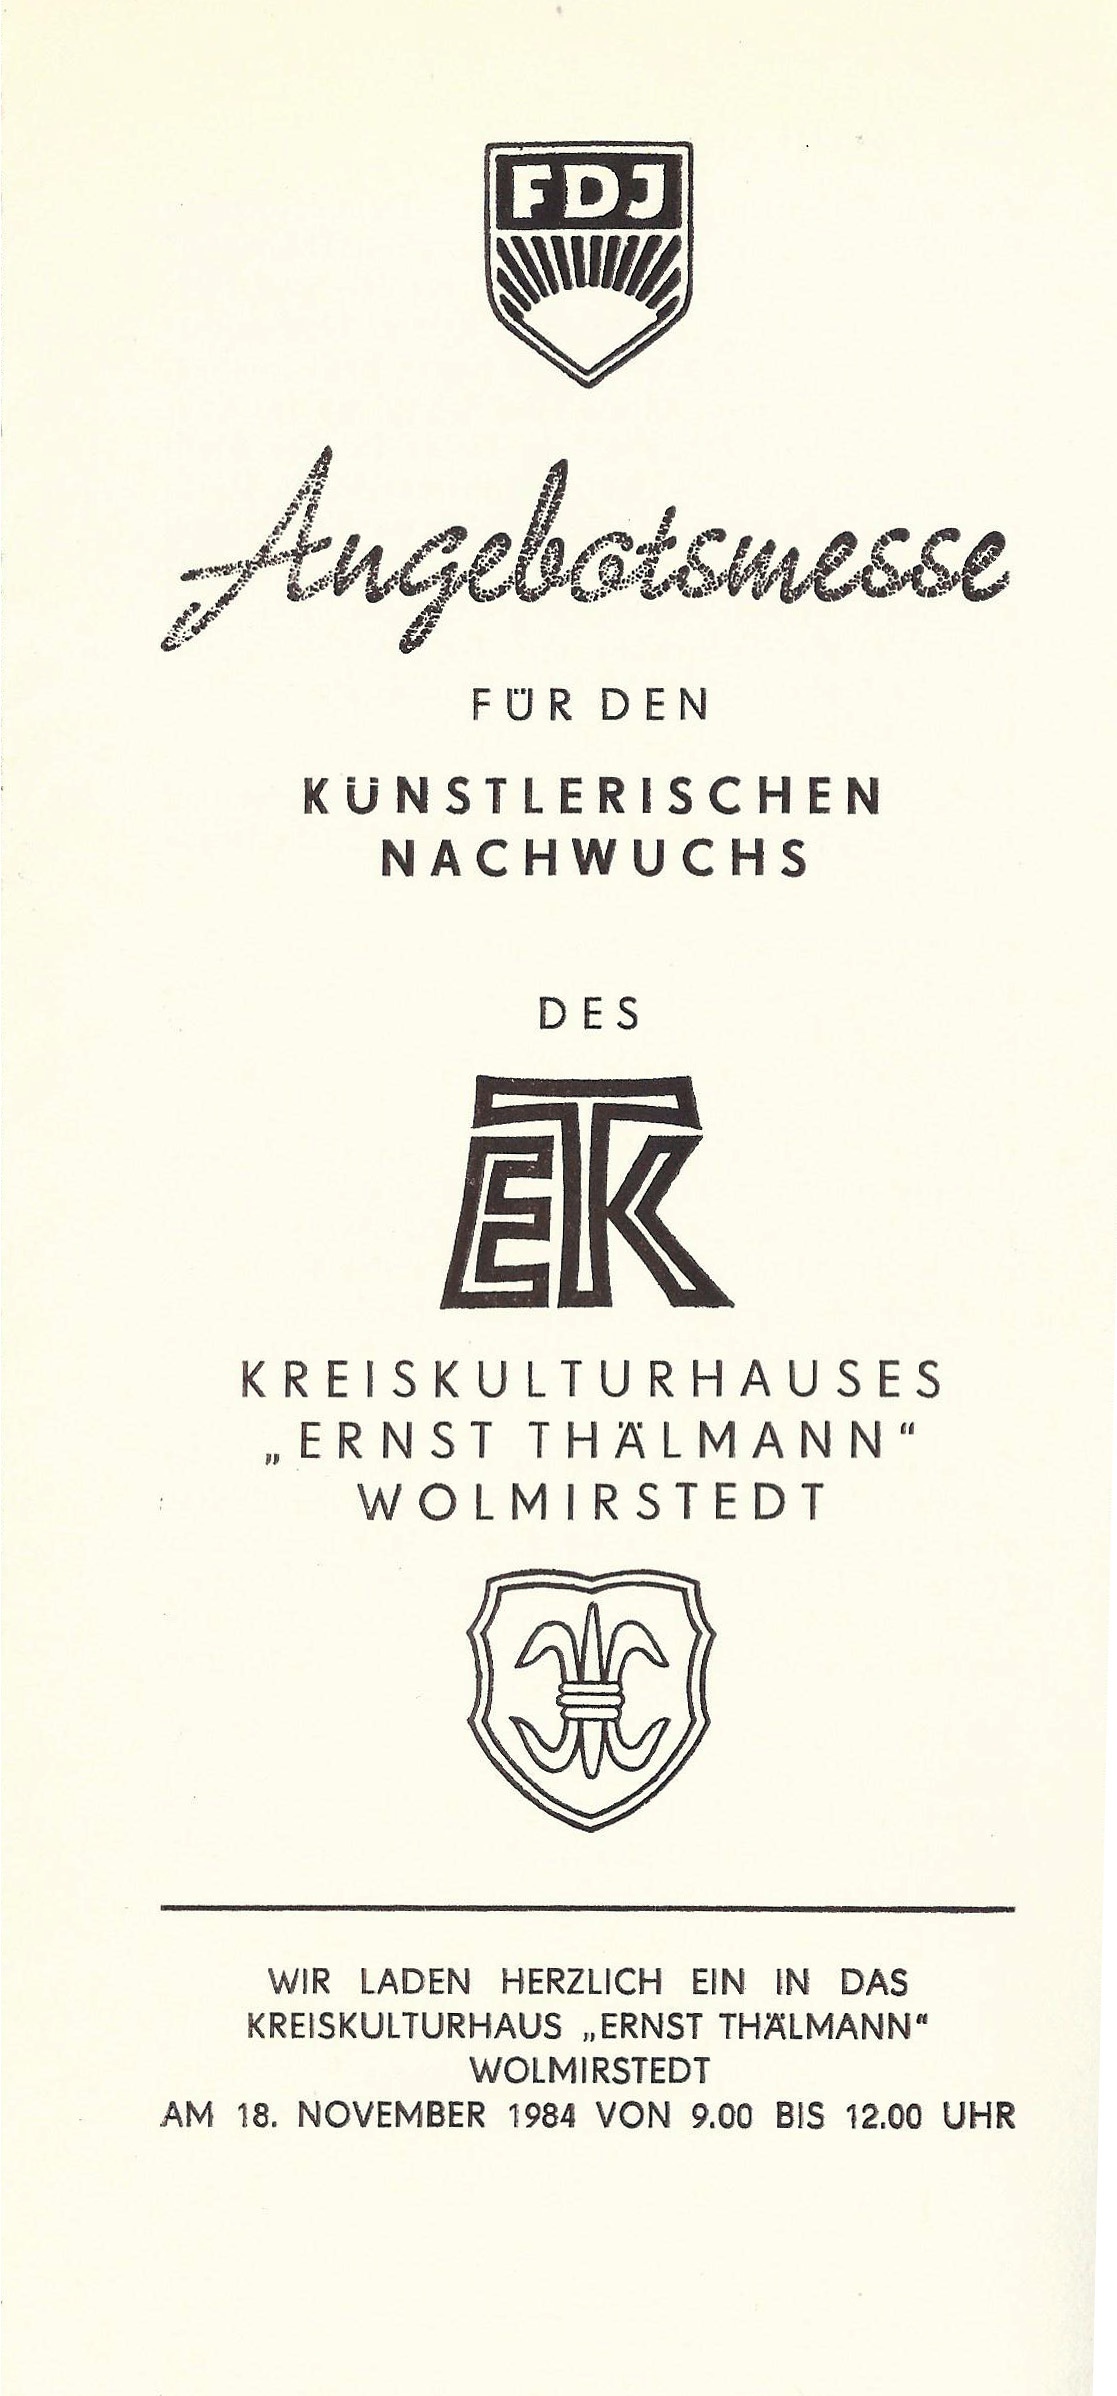 Faltblatt zur "FDJ Angebotsmesse für den künstlerischen Nachwuchs des Kreiskulturhauses Ernst Thälmann Wolmirstedt", 18. November 1984 (Museum Wolmirstedt RR-F)